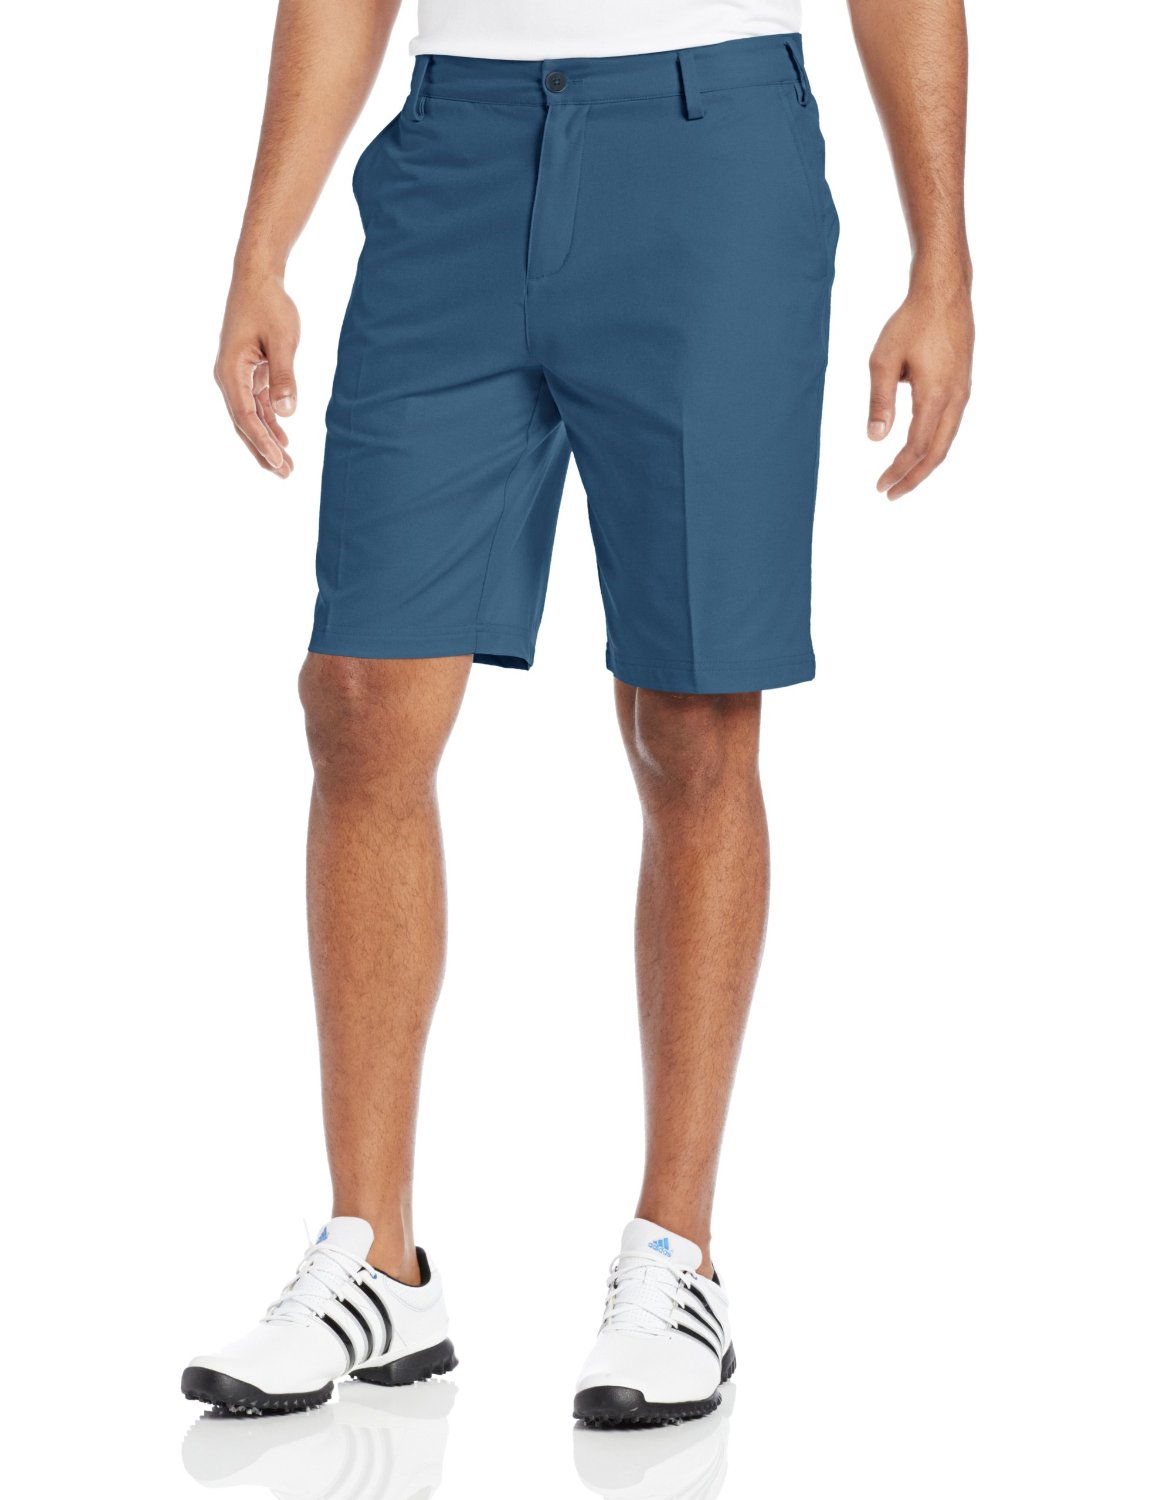 Adidas Mens Heathered Golf Shorts